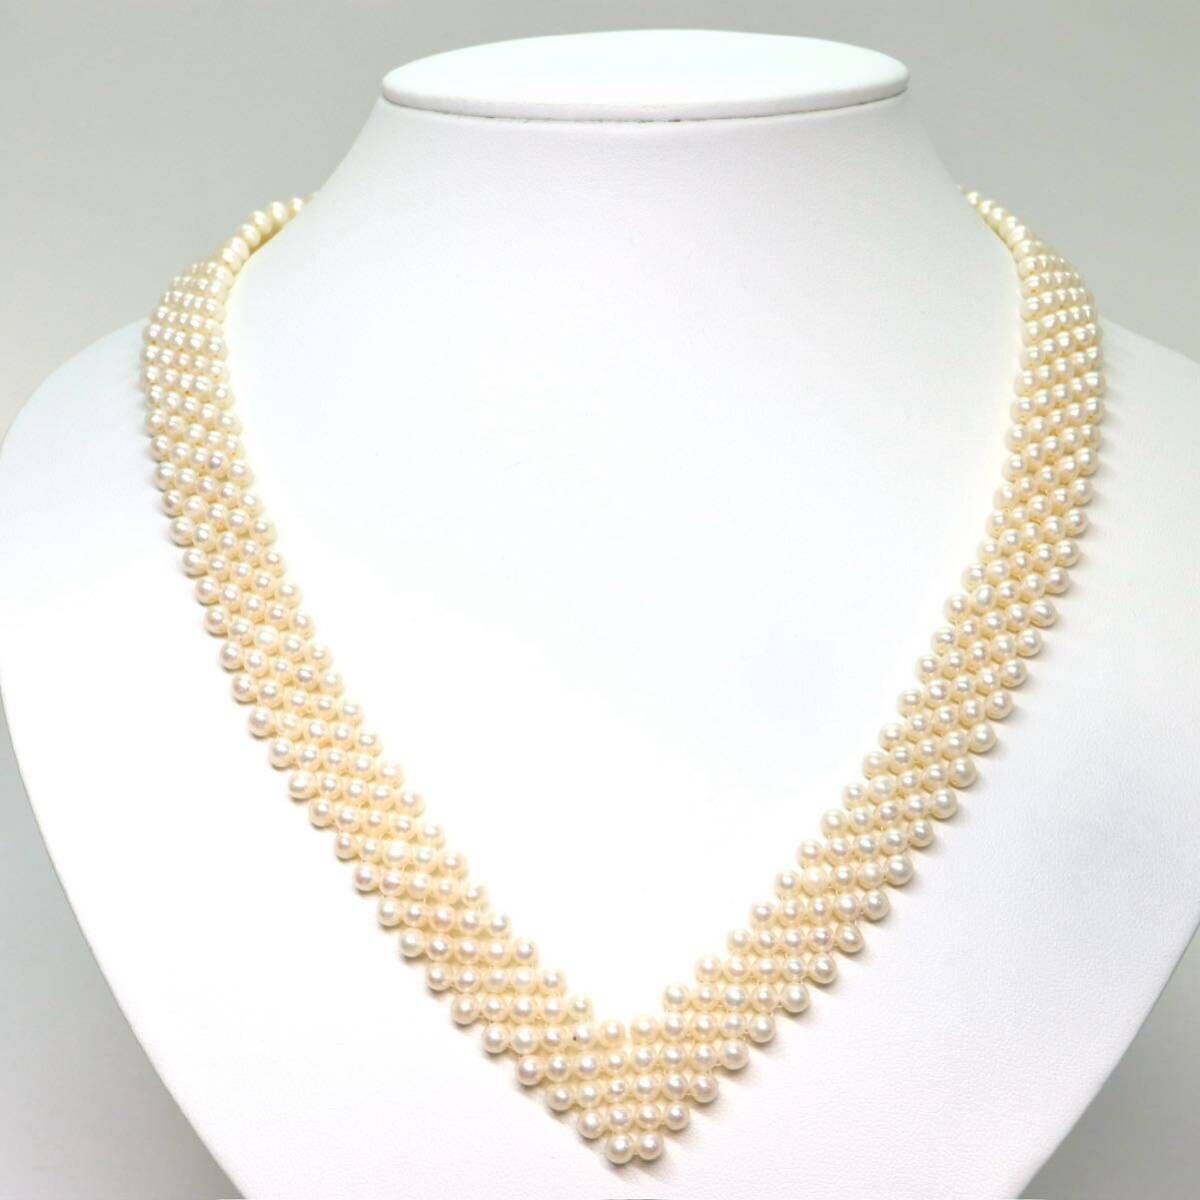 《本真珠3連ネックレス》A 42.2g 約51cm pearl necklace ジュエリー jewelry CH4/CH4の画像1